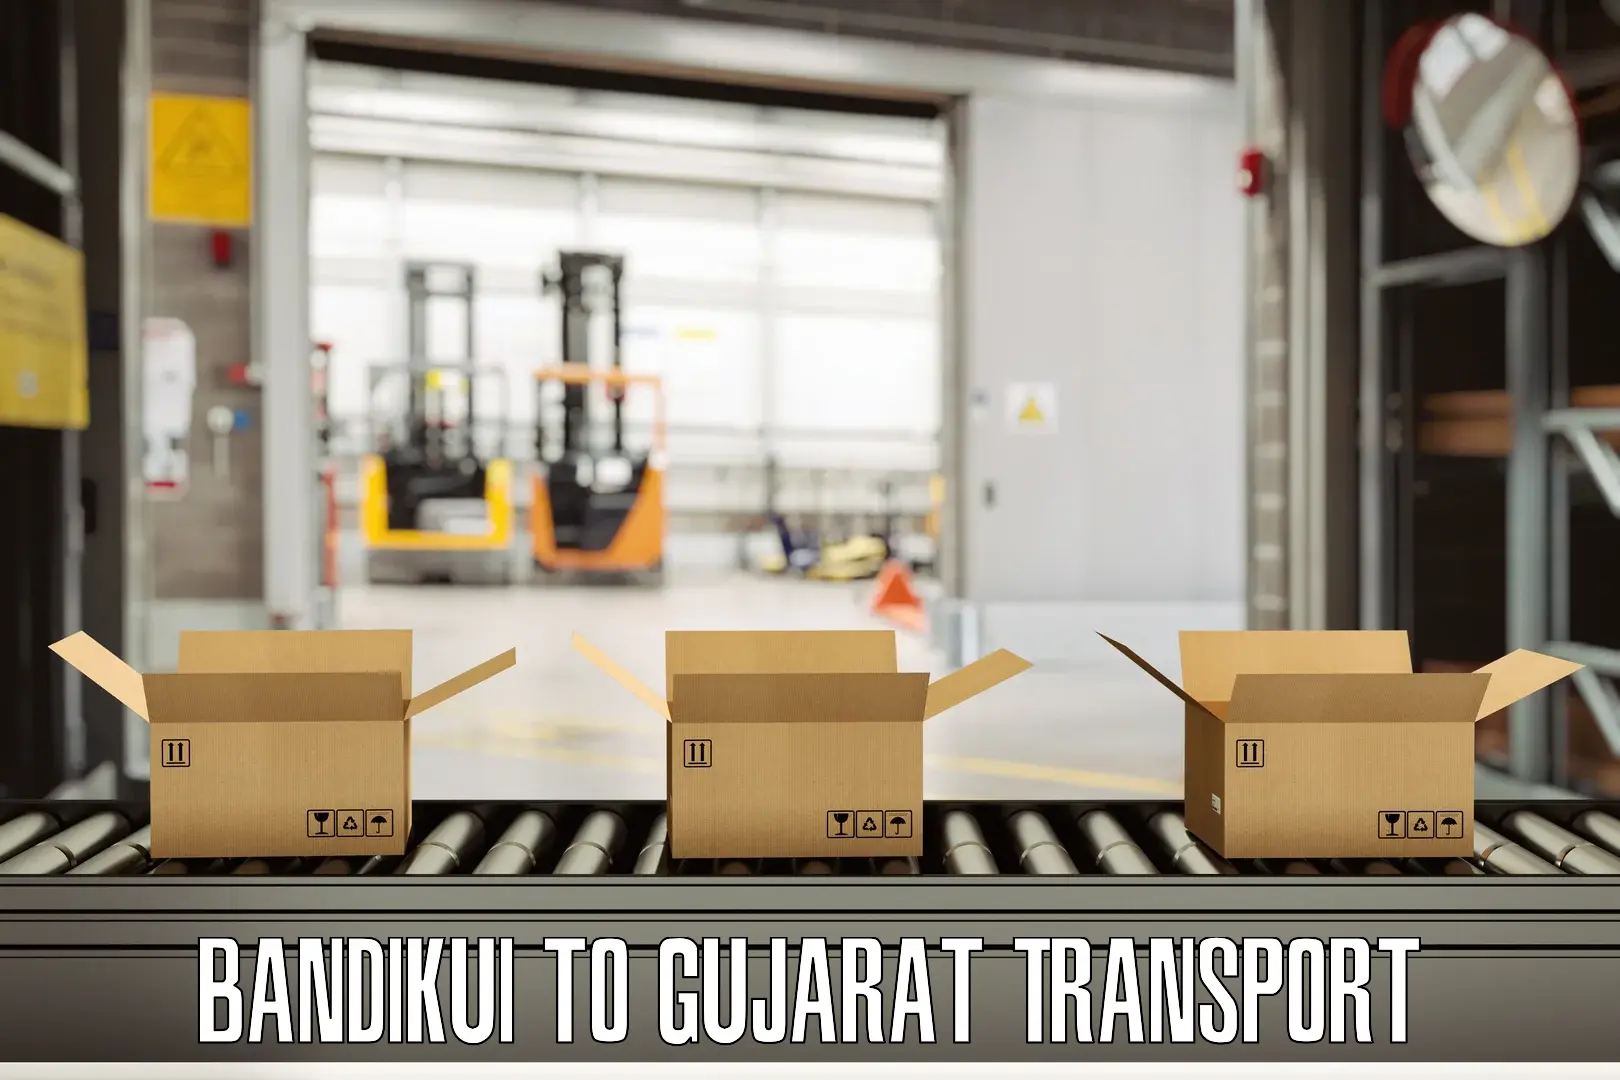 Pick up transport service Bandikui to Jamnagar